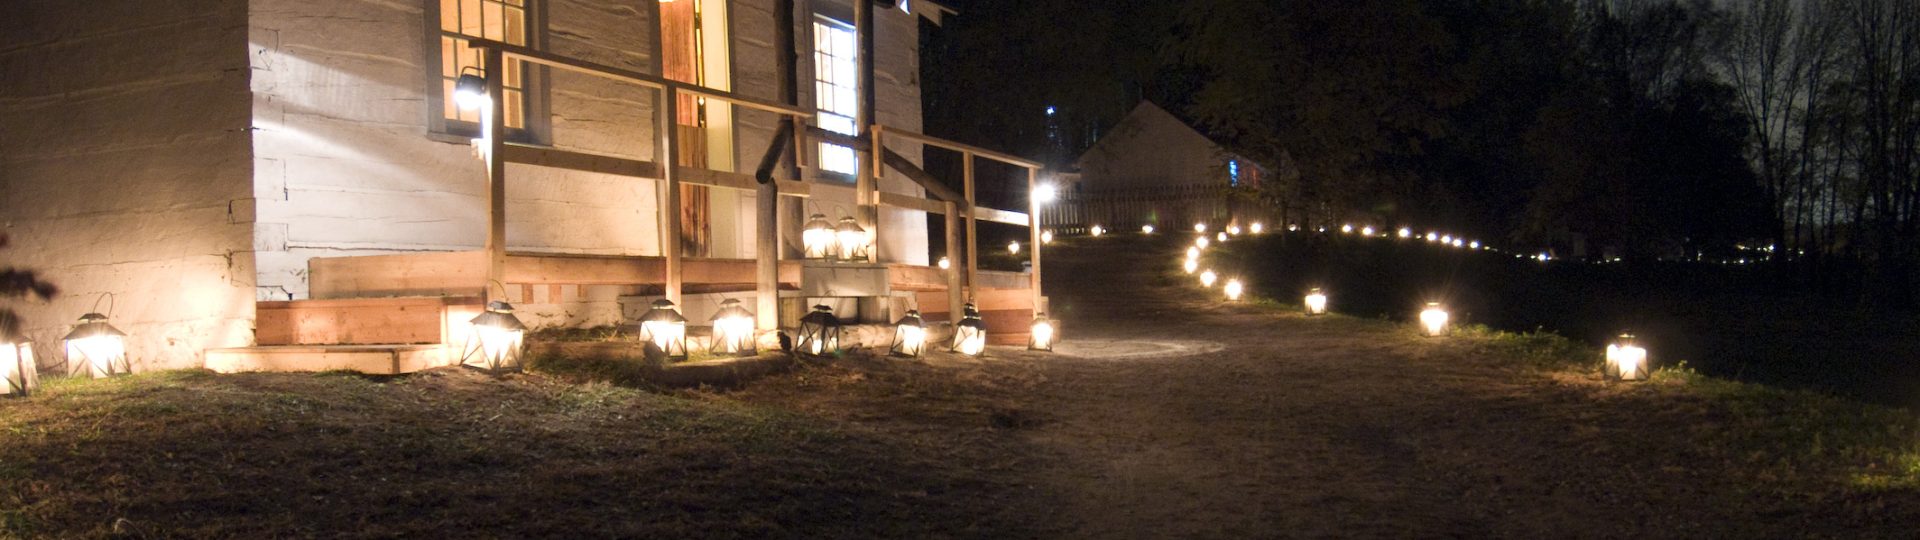 Quelques édifices historiques illuminés par des lanternes pendant la nuit